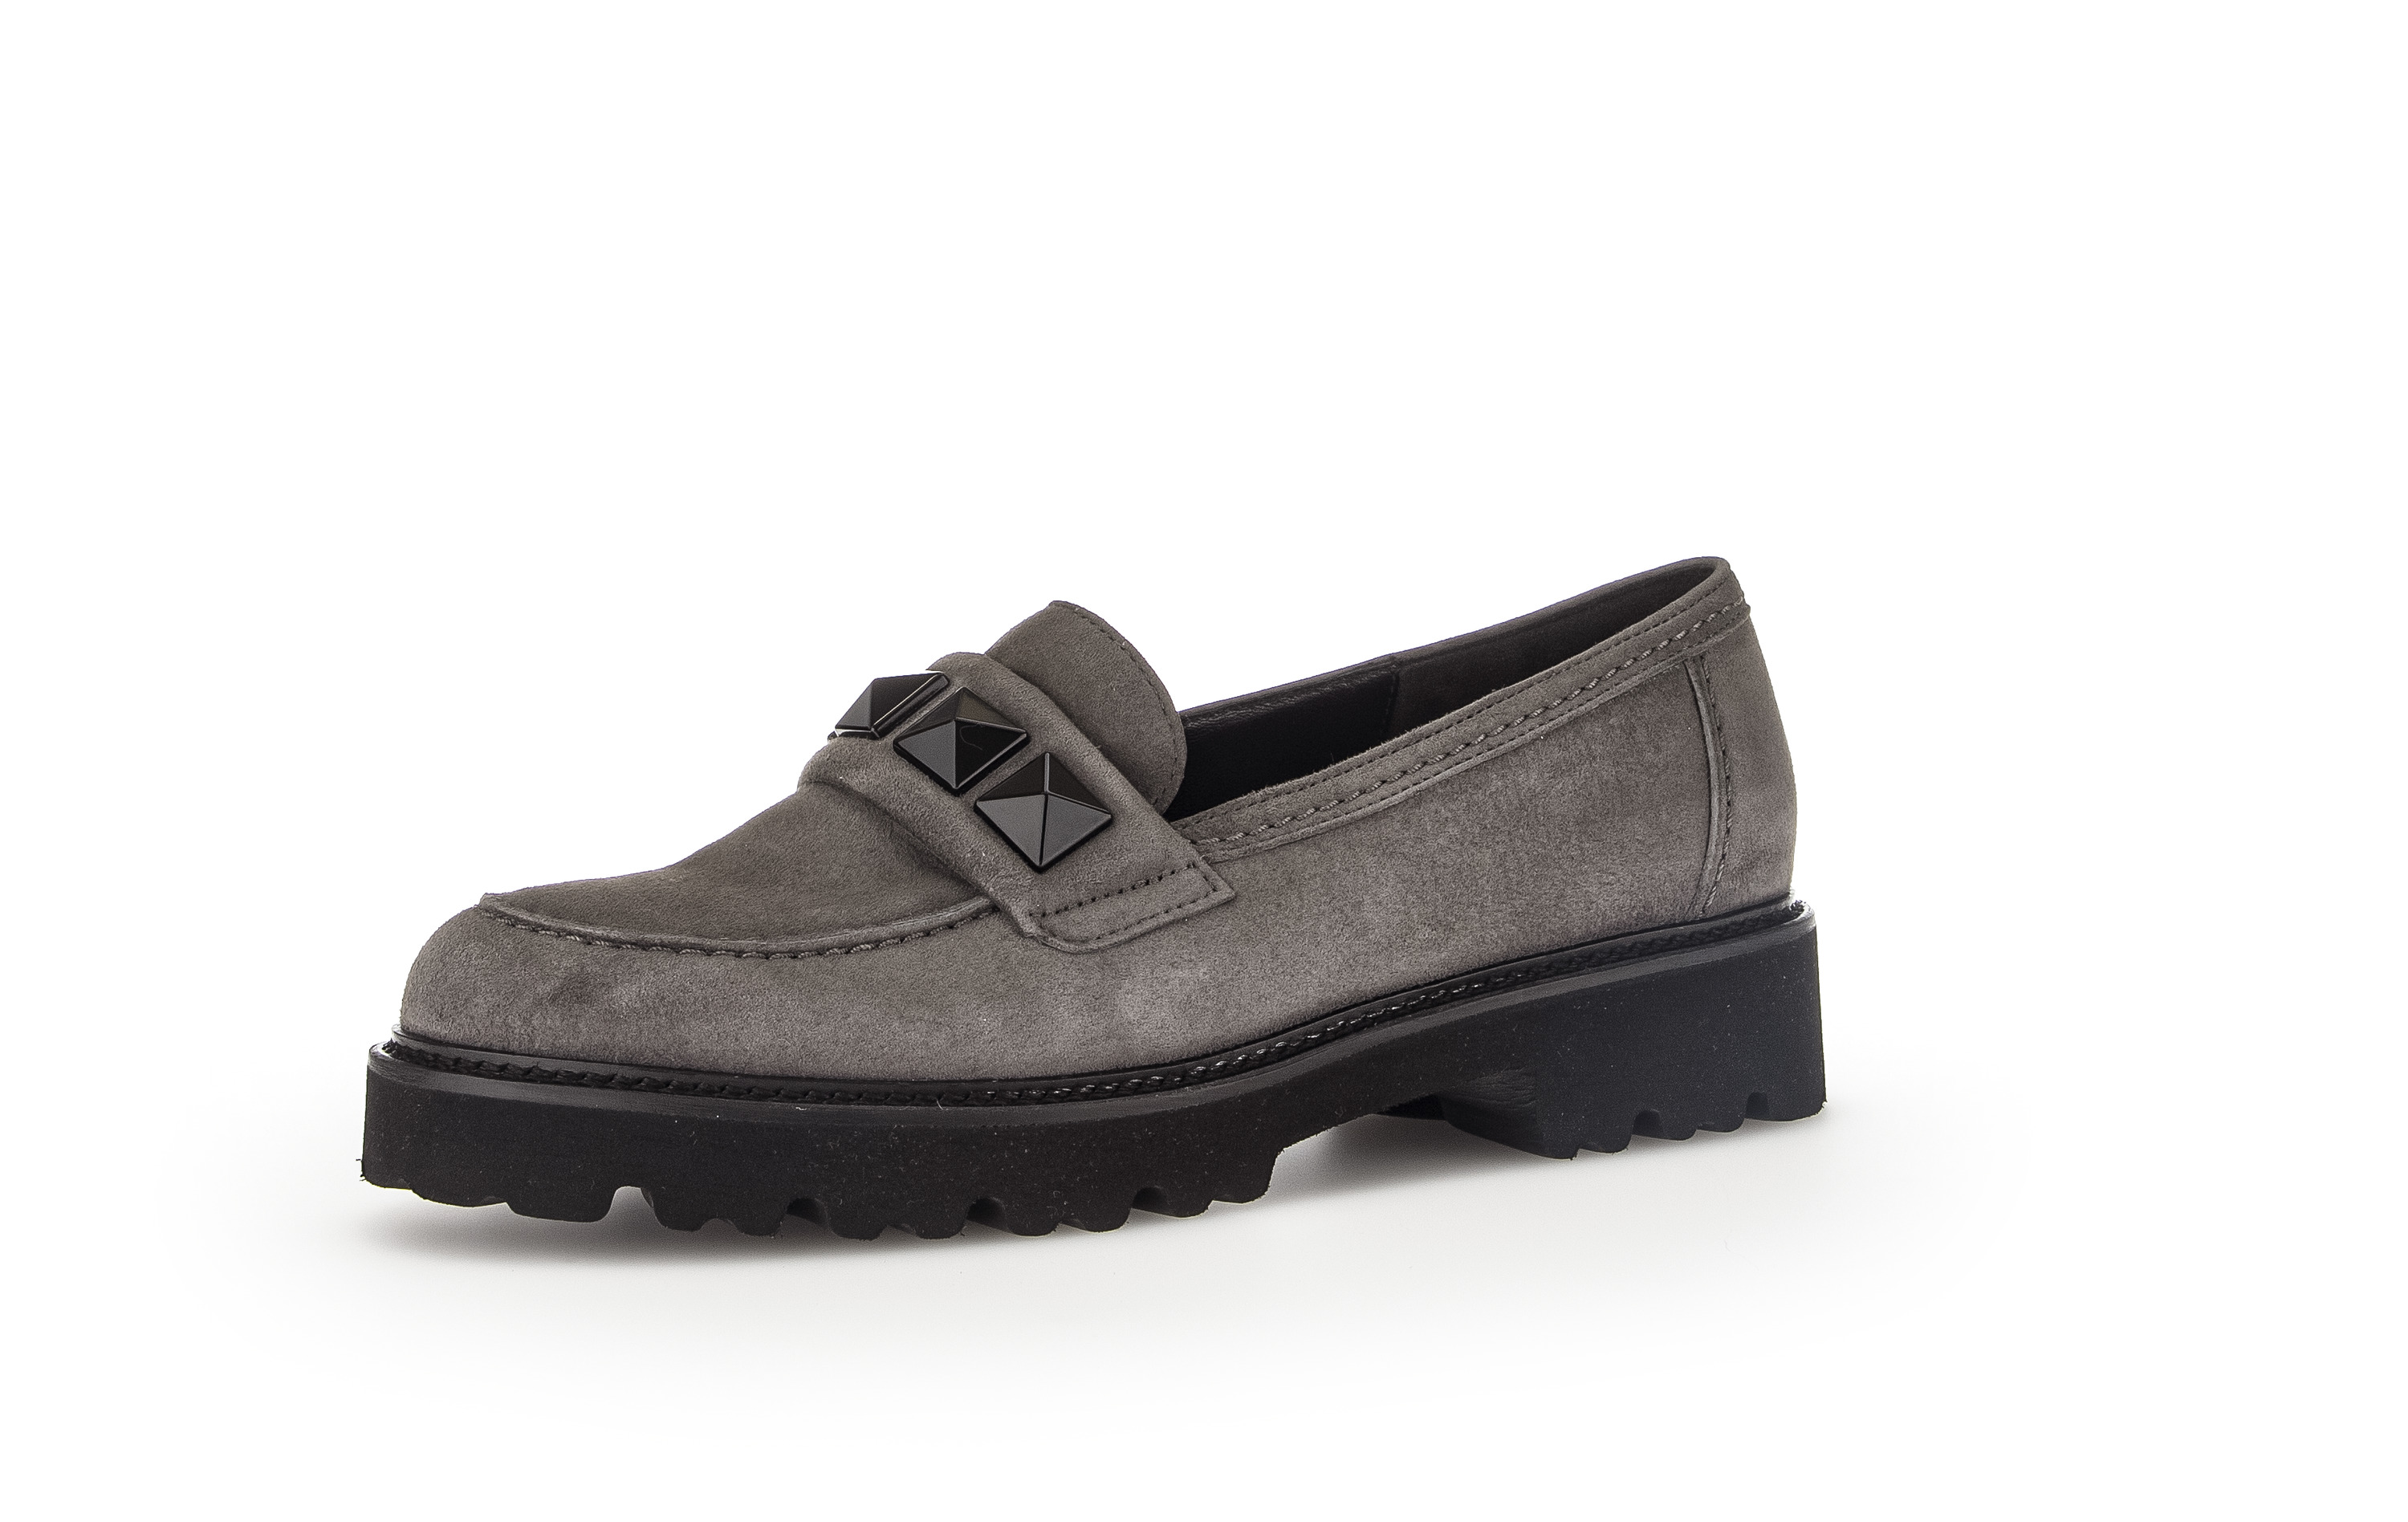 Gabor Shoes Slipper - Grau Leder